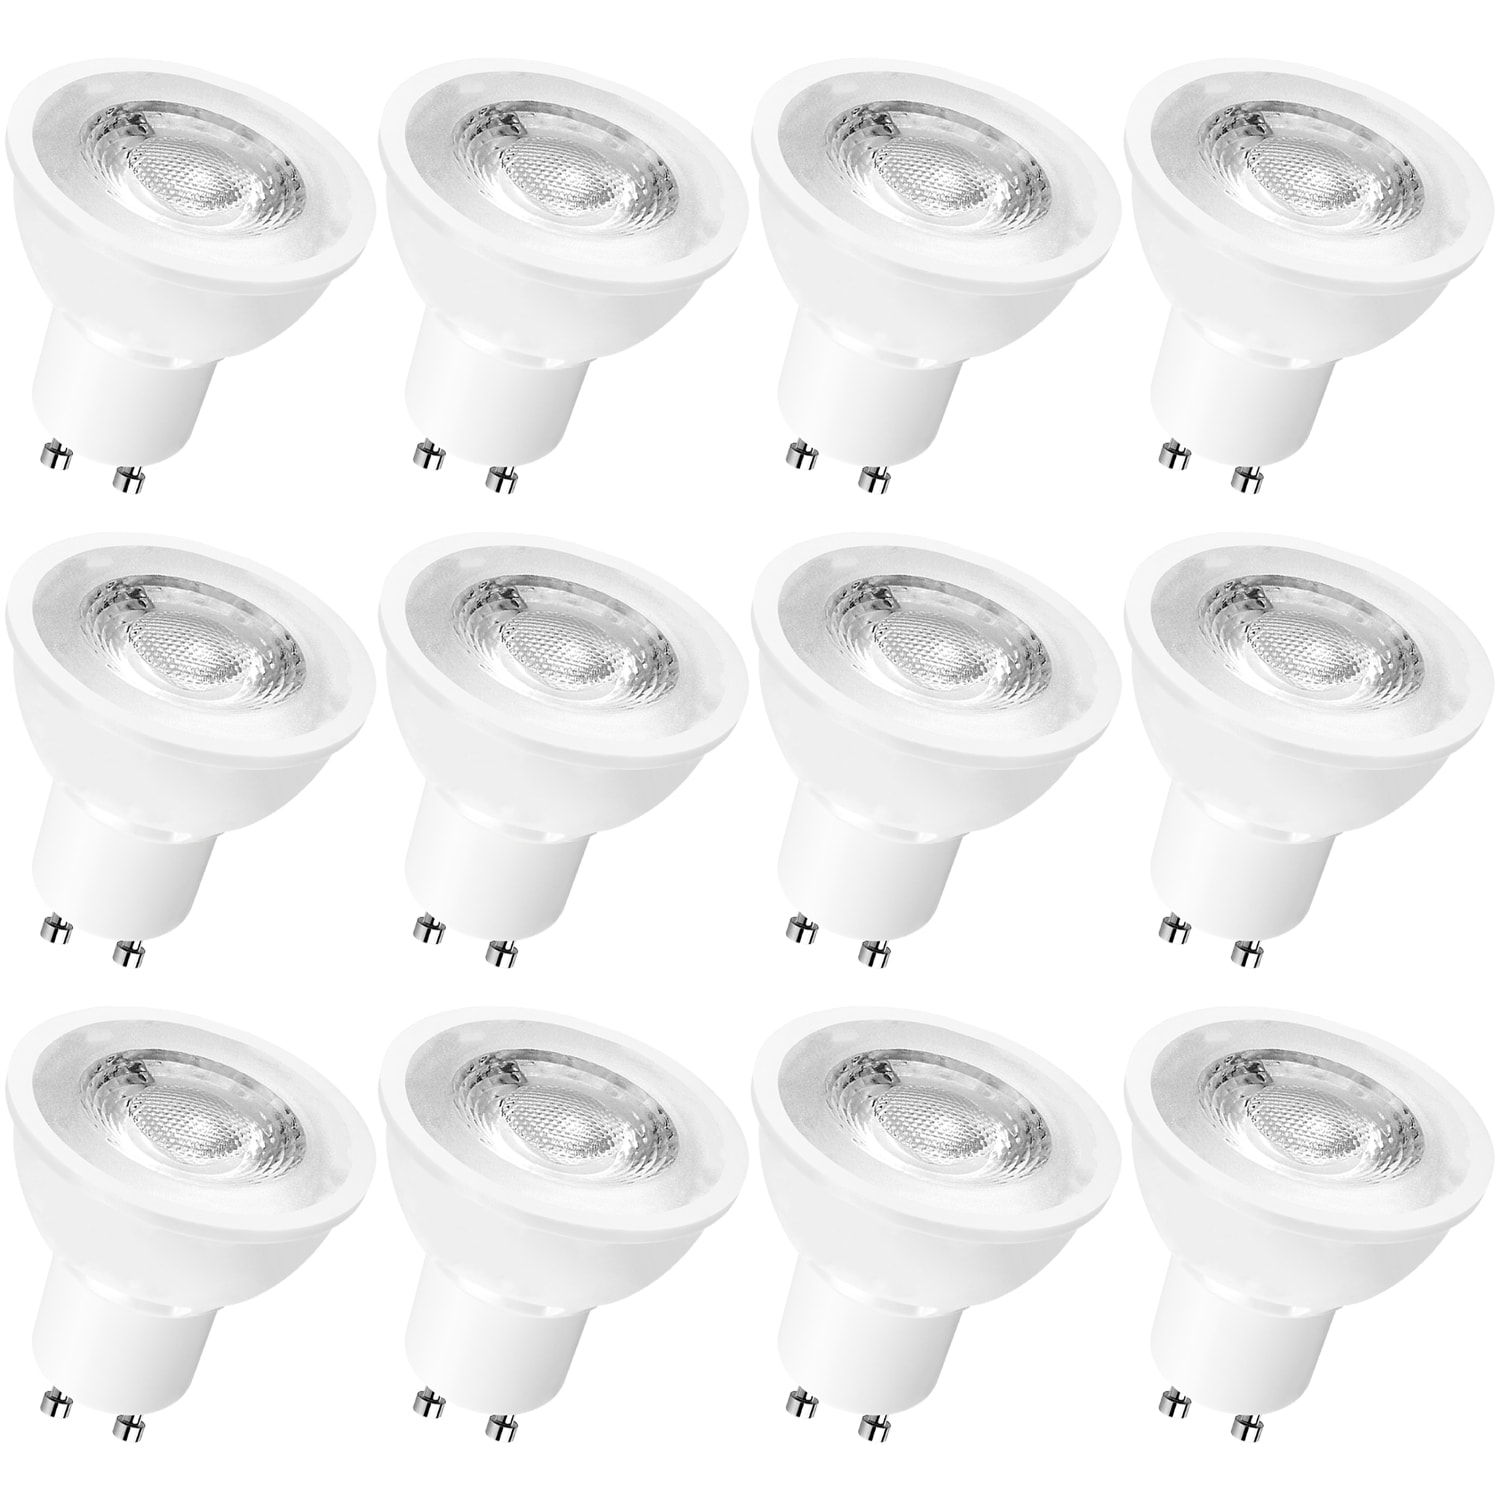 8x White Plastic GU10 Spotlight Ceiling Fitting Light Bulb Lamp Holder Socket 